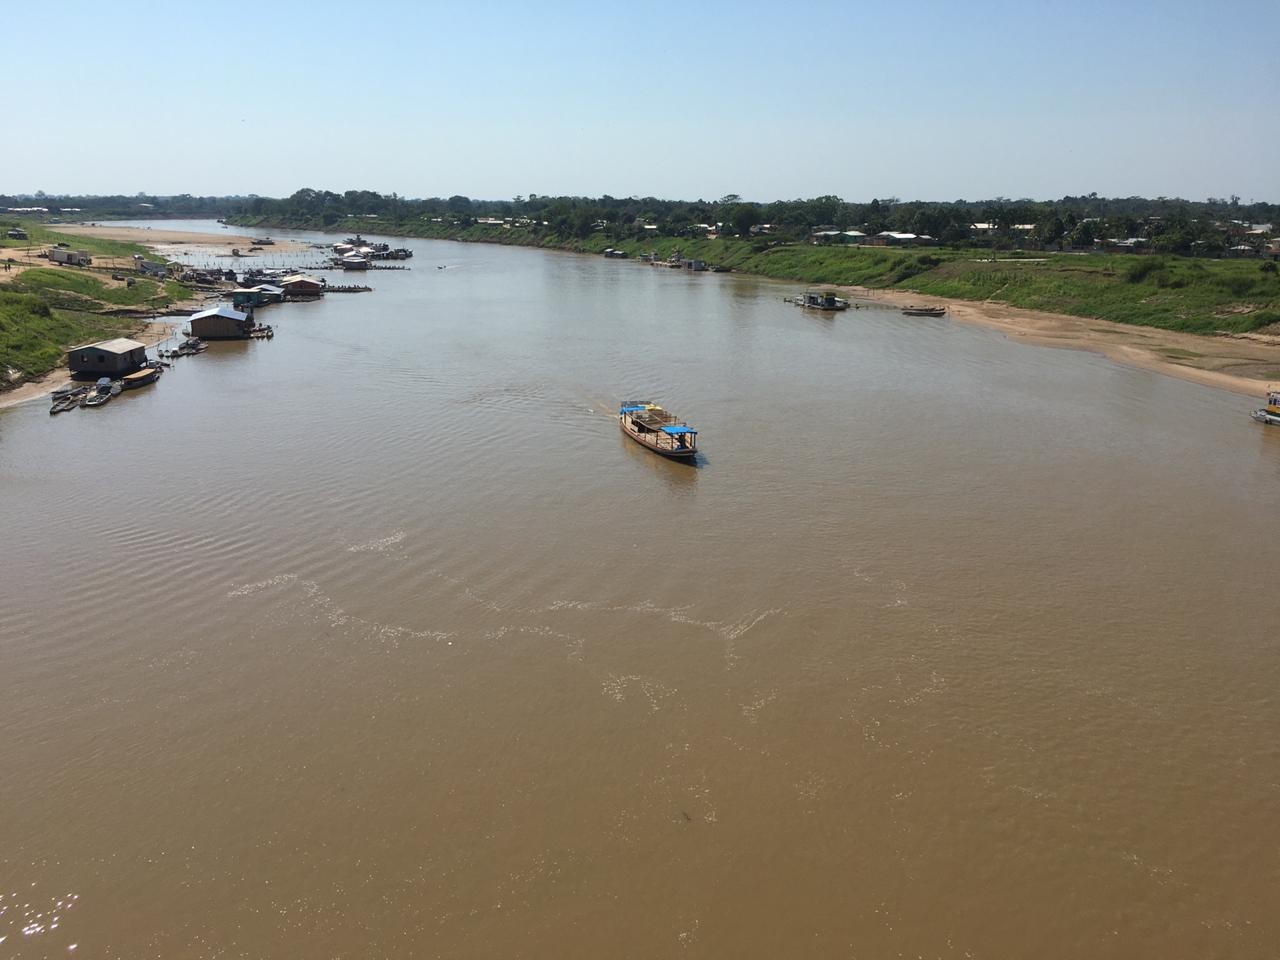 Homem desaparece no Juruá após tentar atravessar rio nadando no interior do Acre